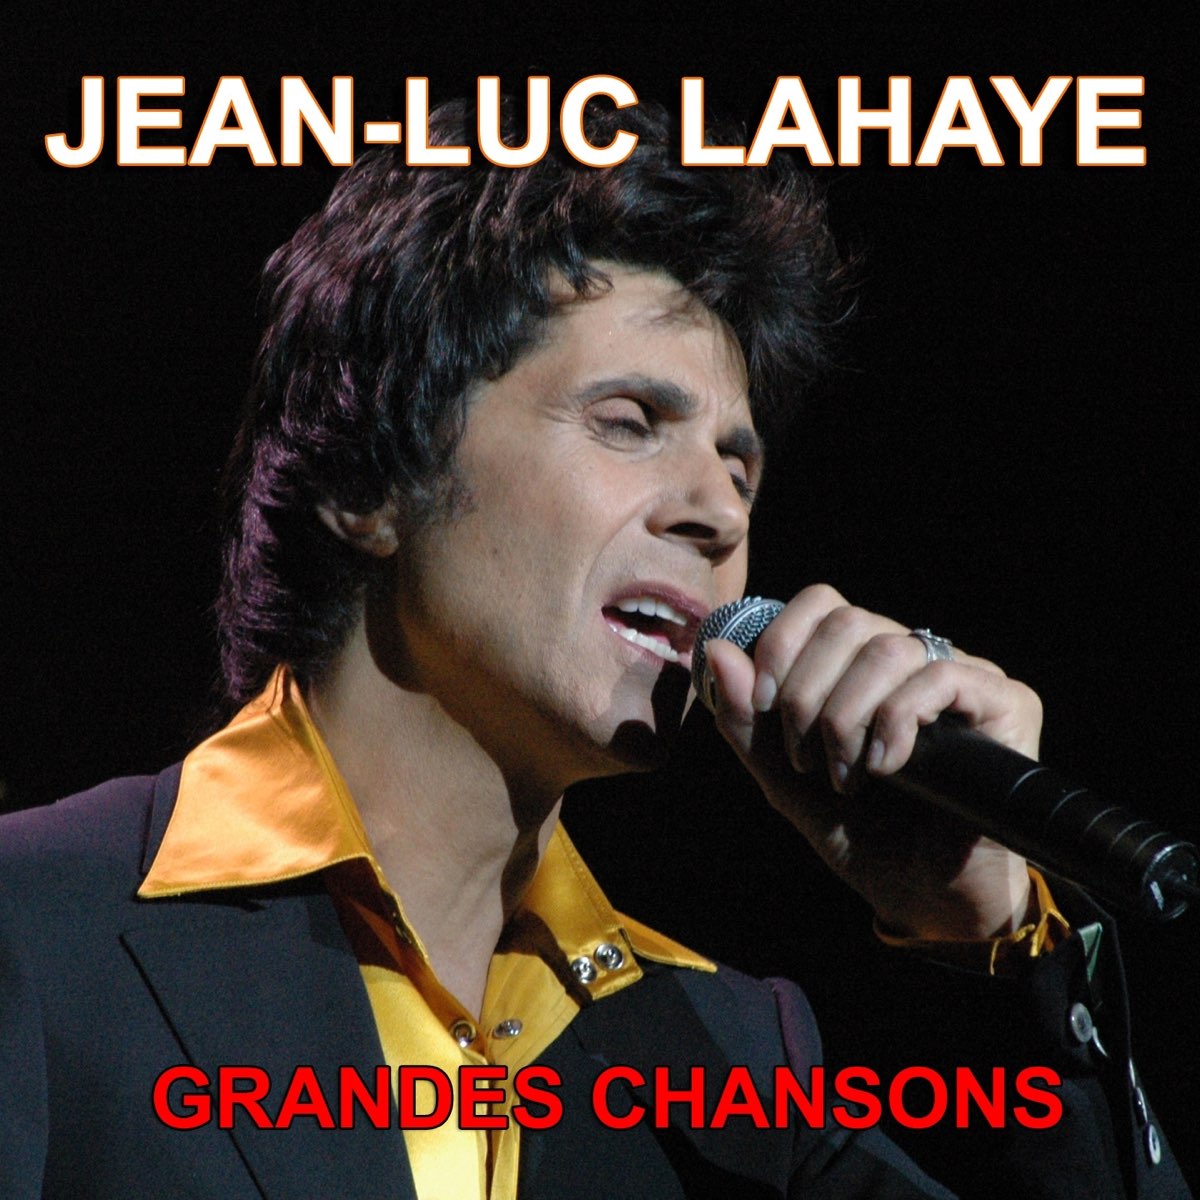 Jean-Luc Lahaye : Grandes chansons (Ses plus grands succès) – Album par Jean -Luc Lahaye – Apple Music